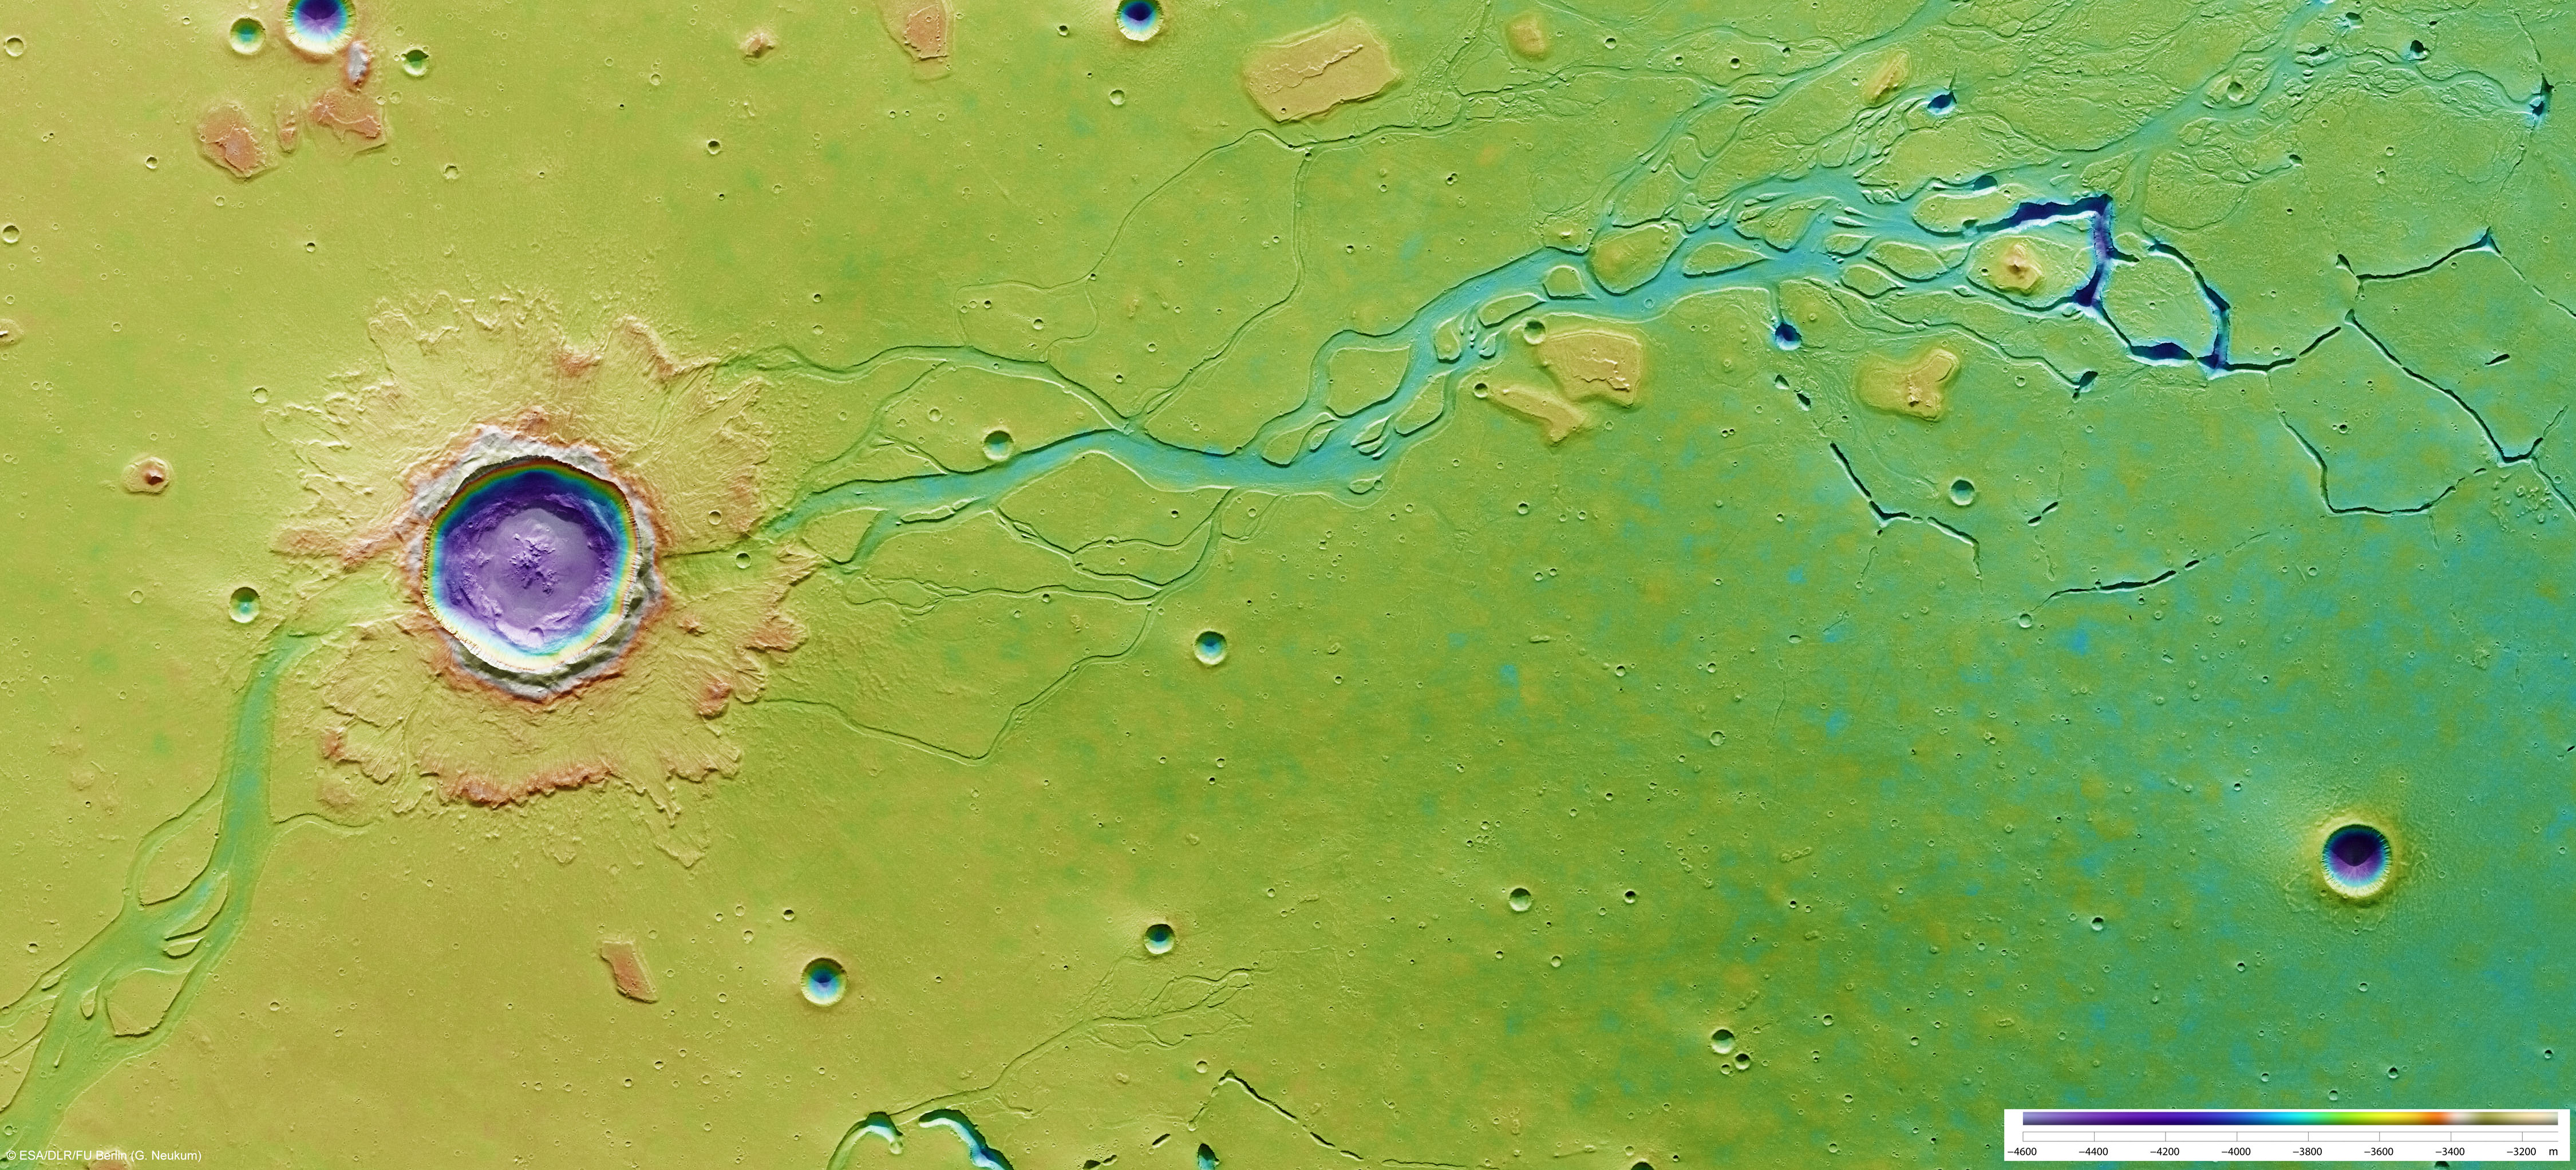 Impacto en Hebrus Vallis. Fuente: ESA/DLR/FU Berlin (G. Neukum)